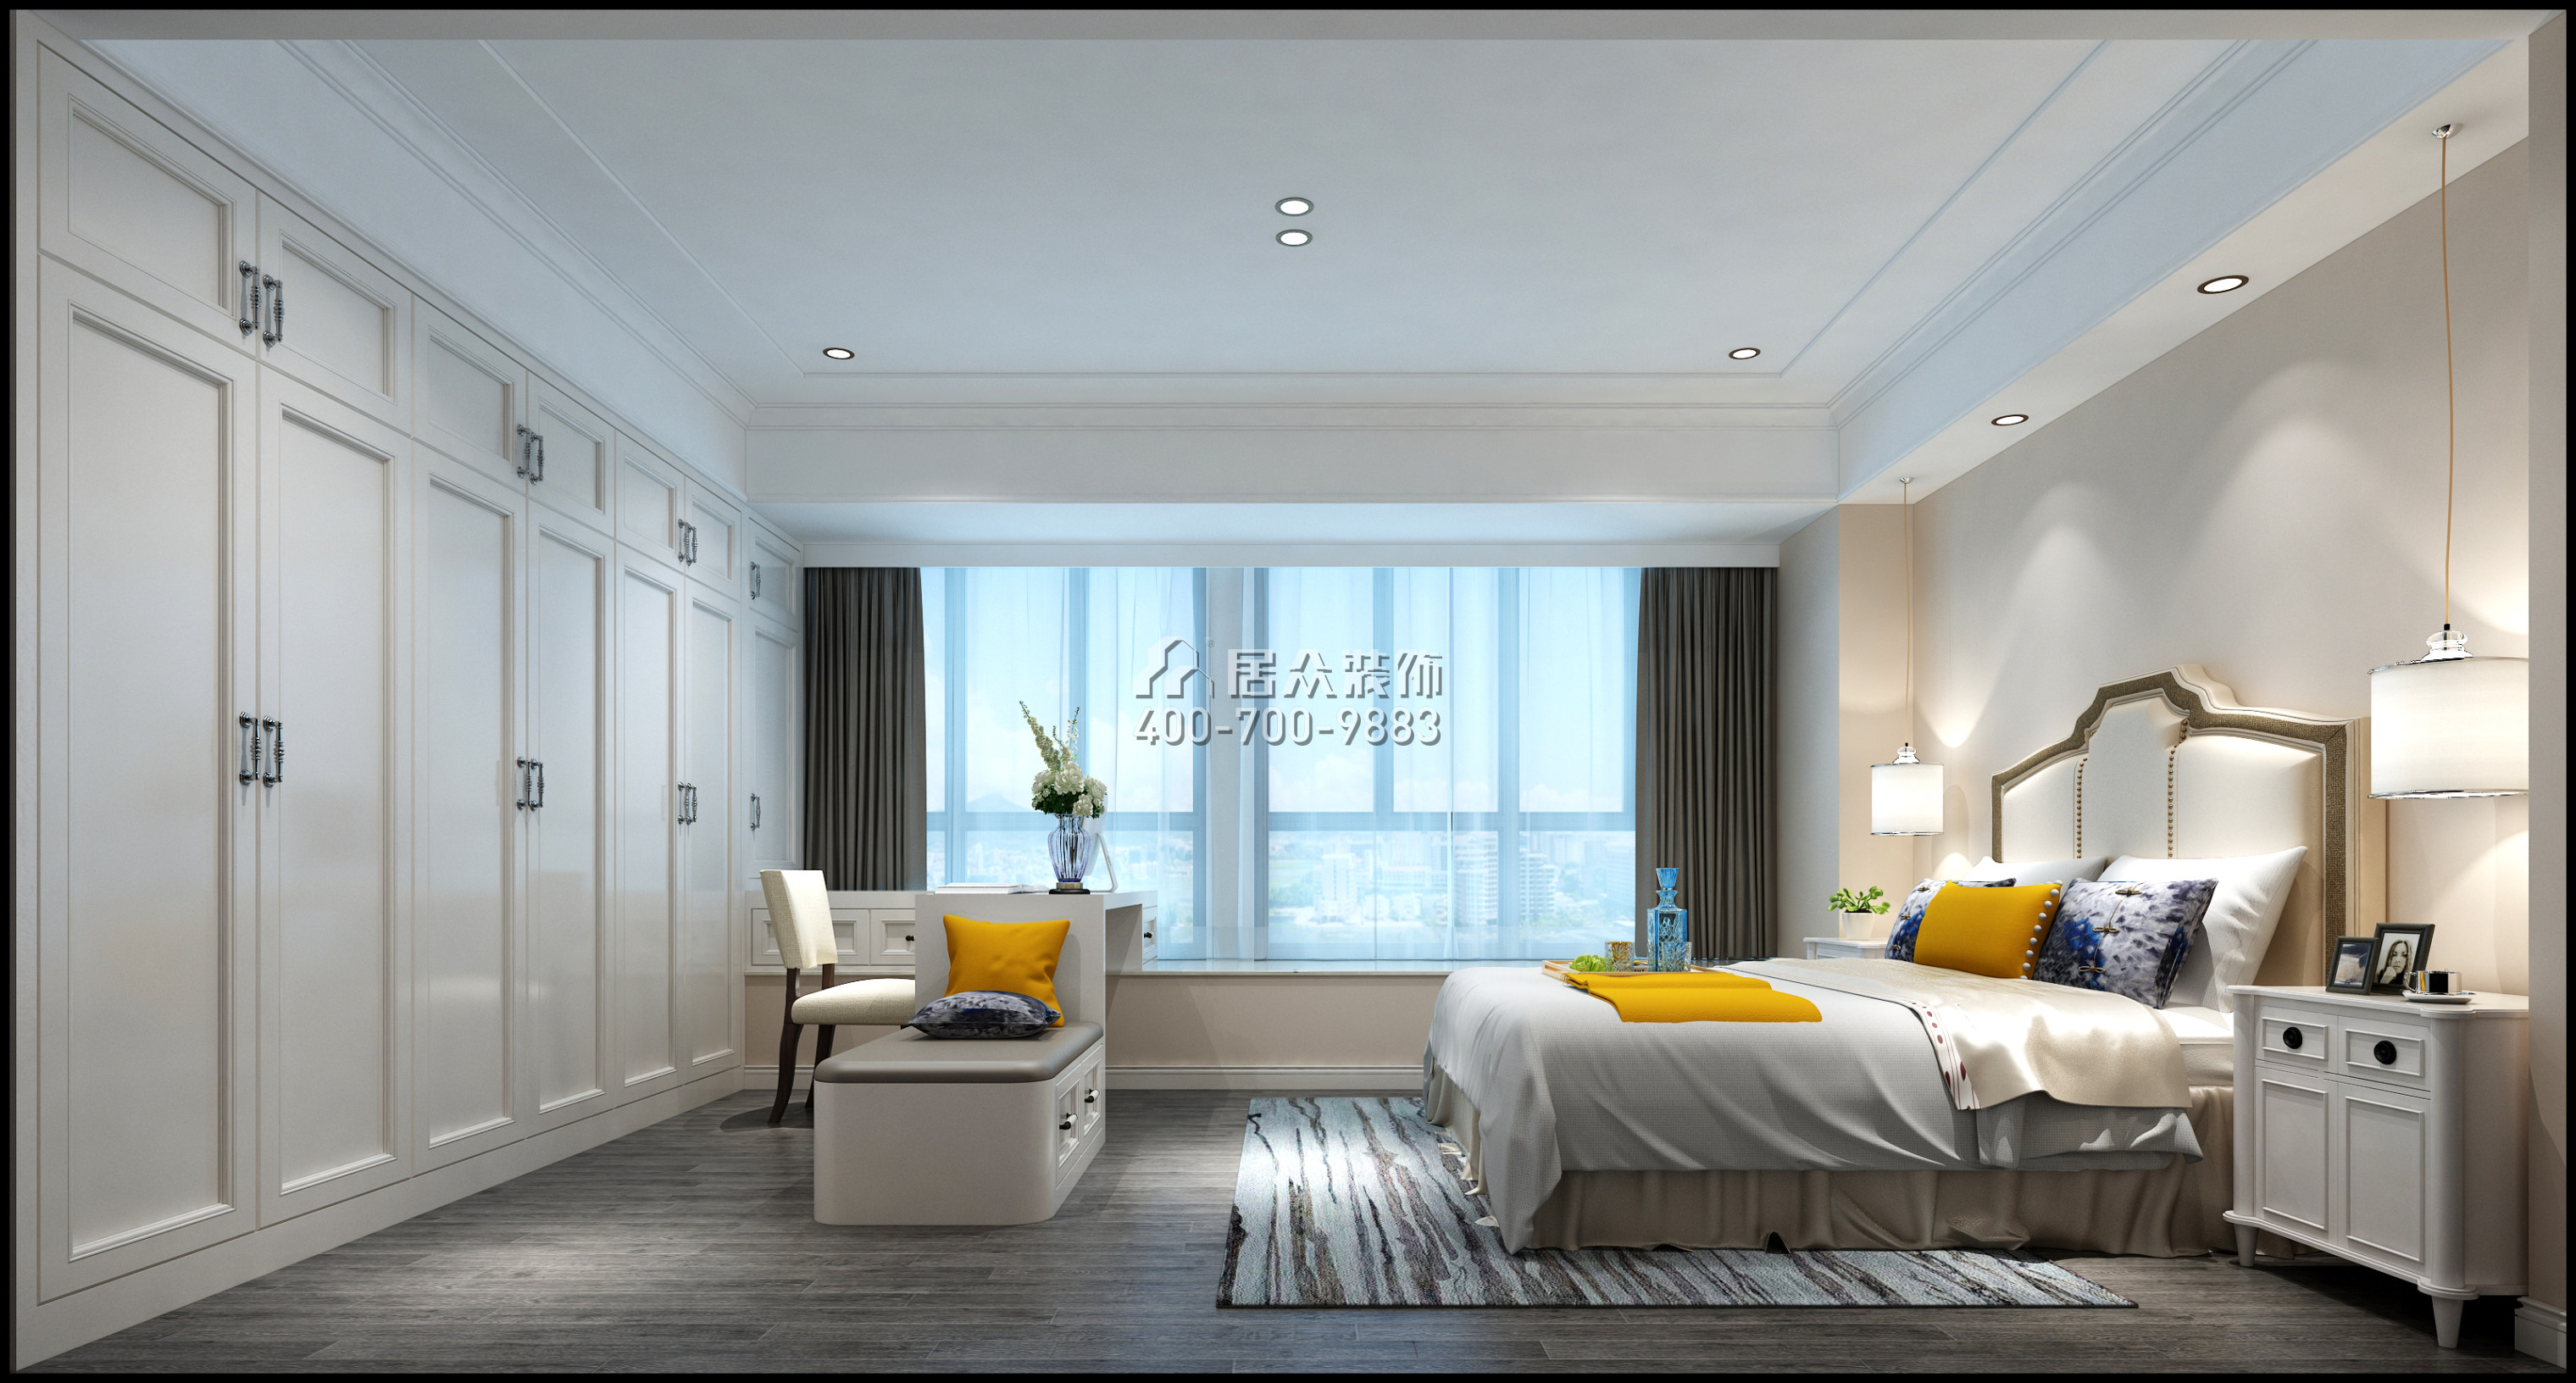 仁山智水花园一期157平方米美式风格平层户型卧室装修效果图